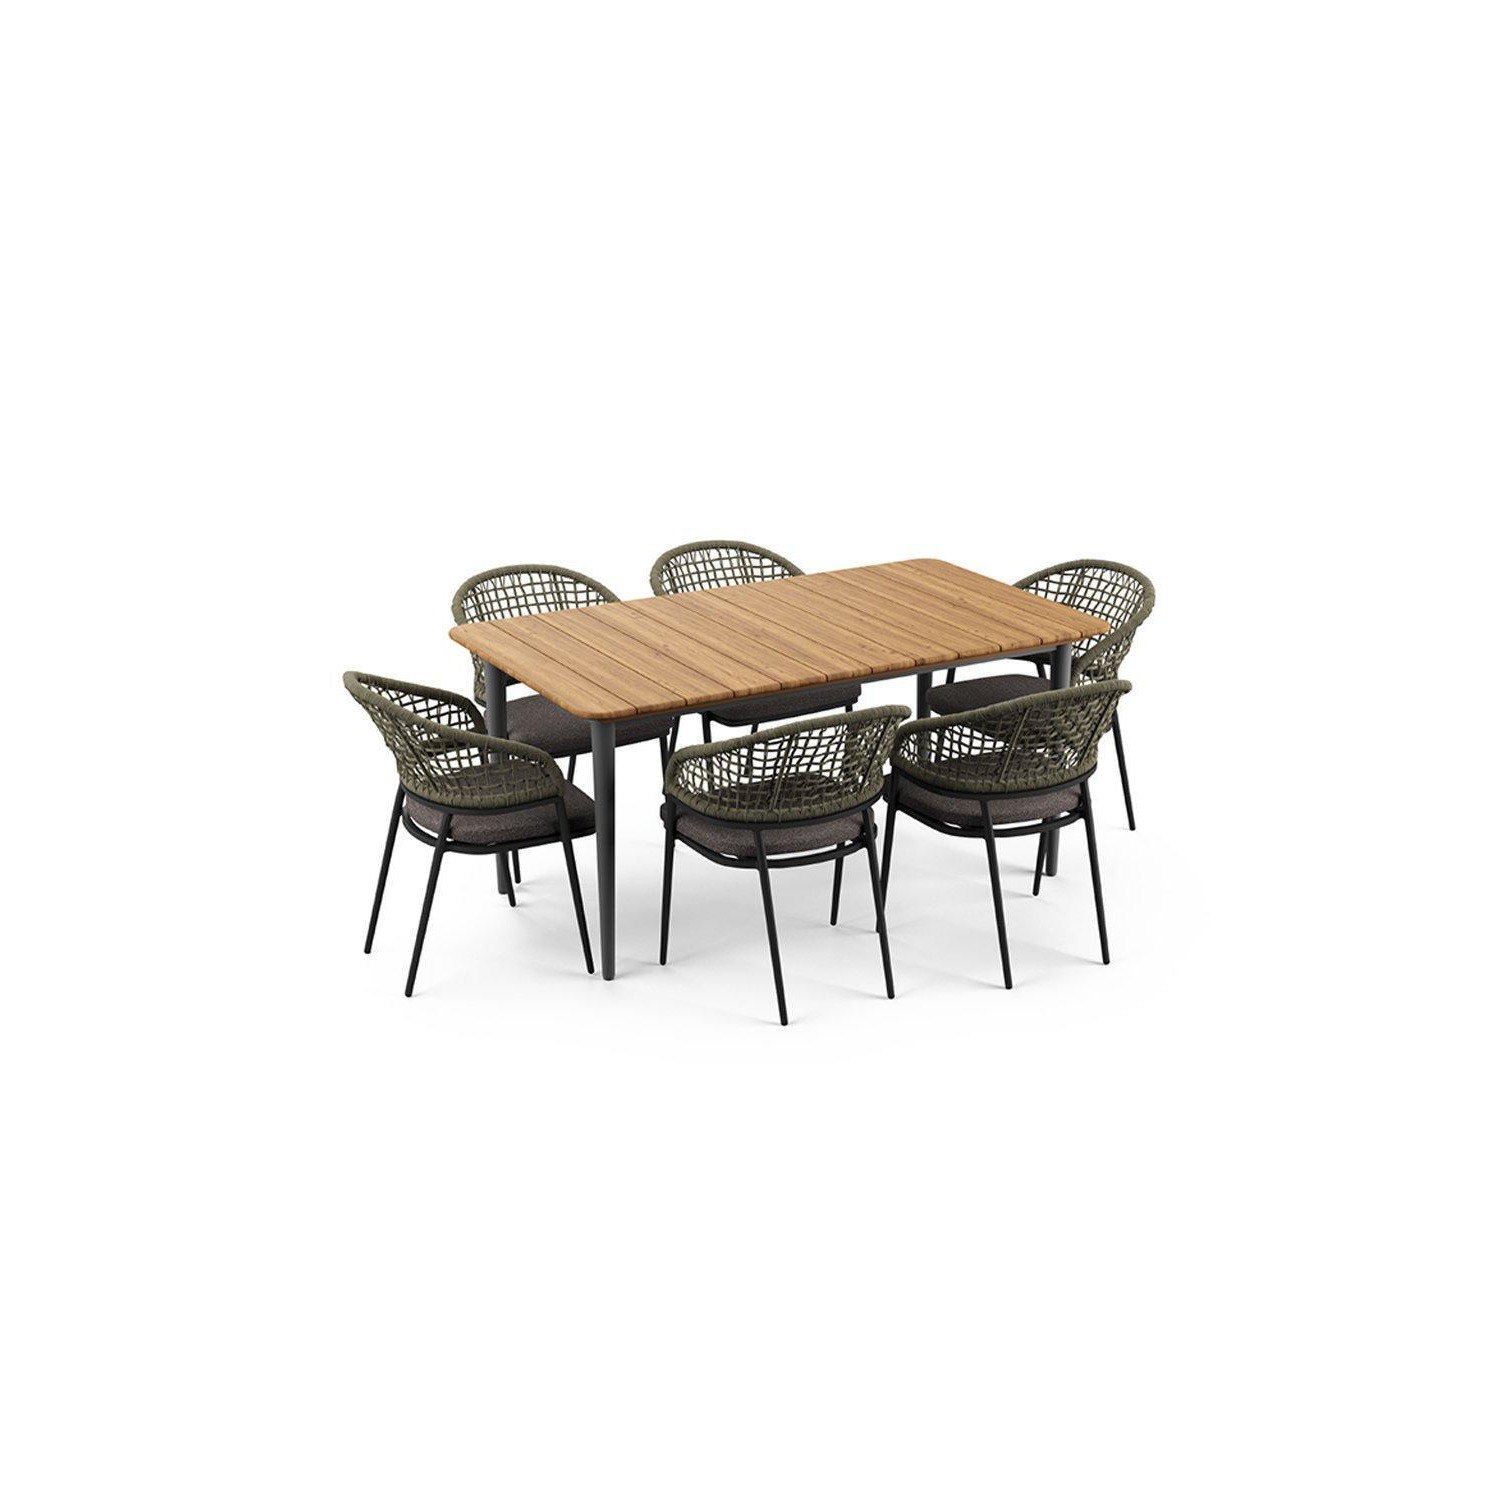 Kalama 6 Seat Rectangular Dining Set with Teak Table in Green - image 1